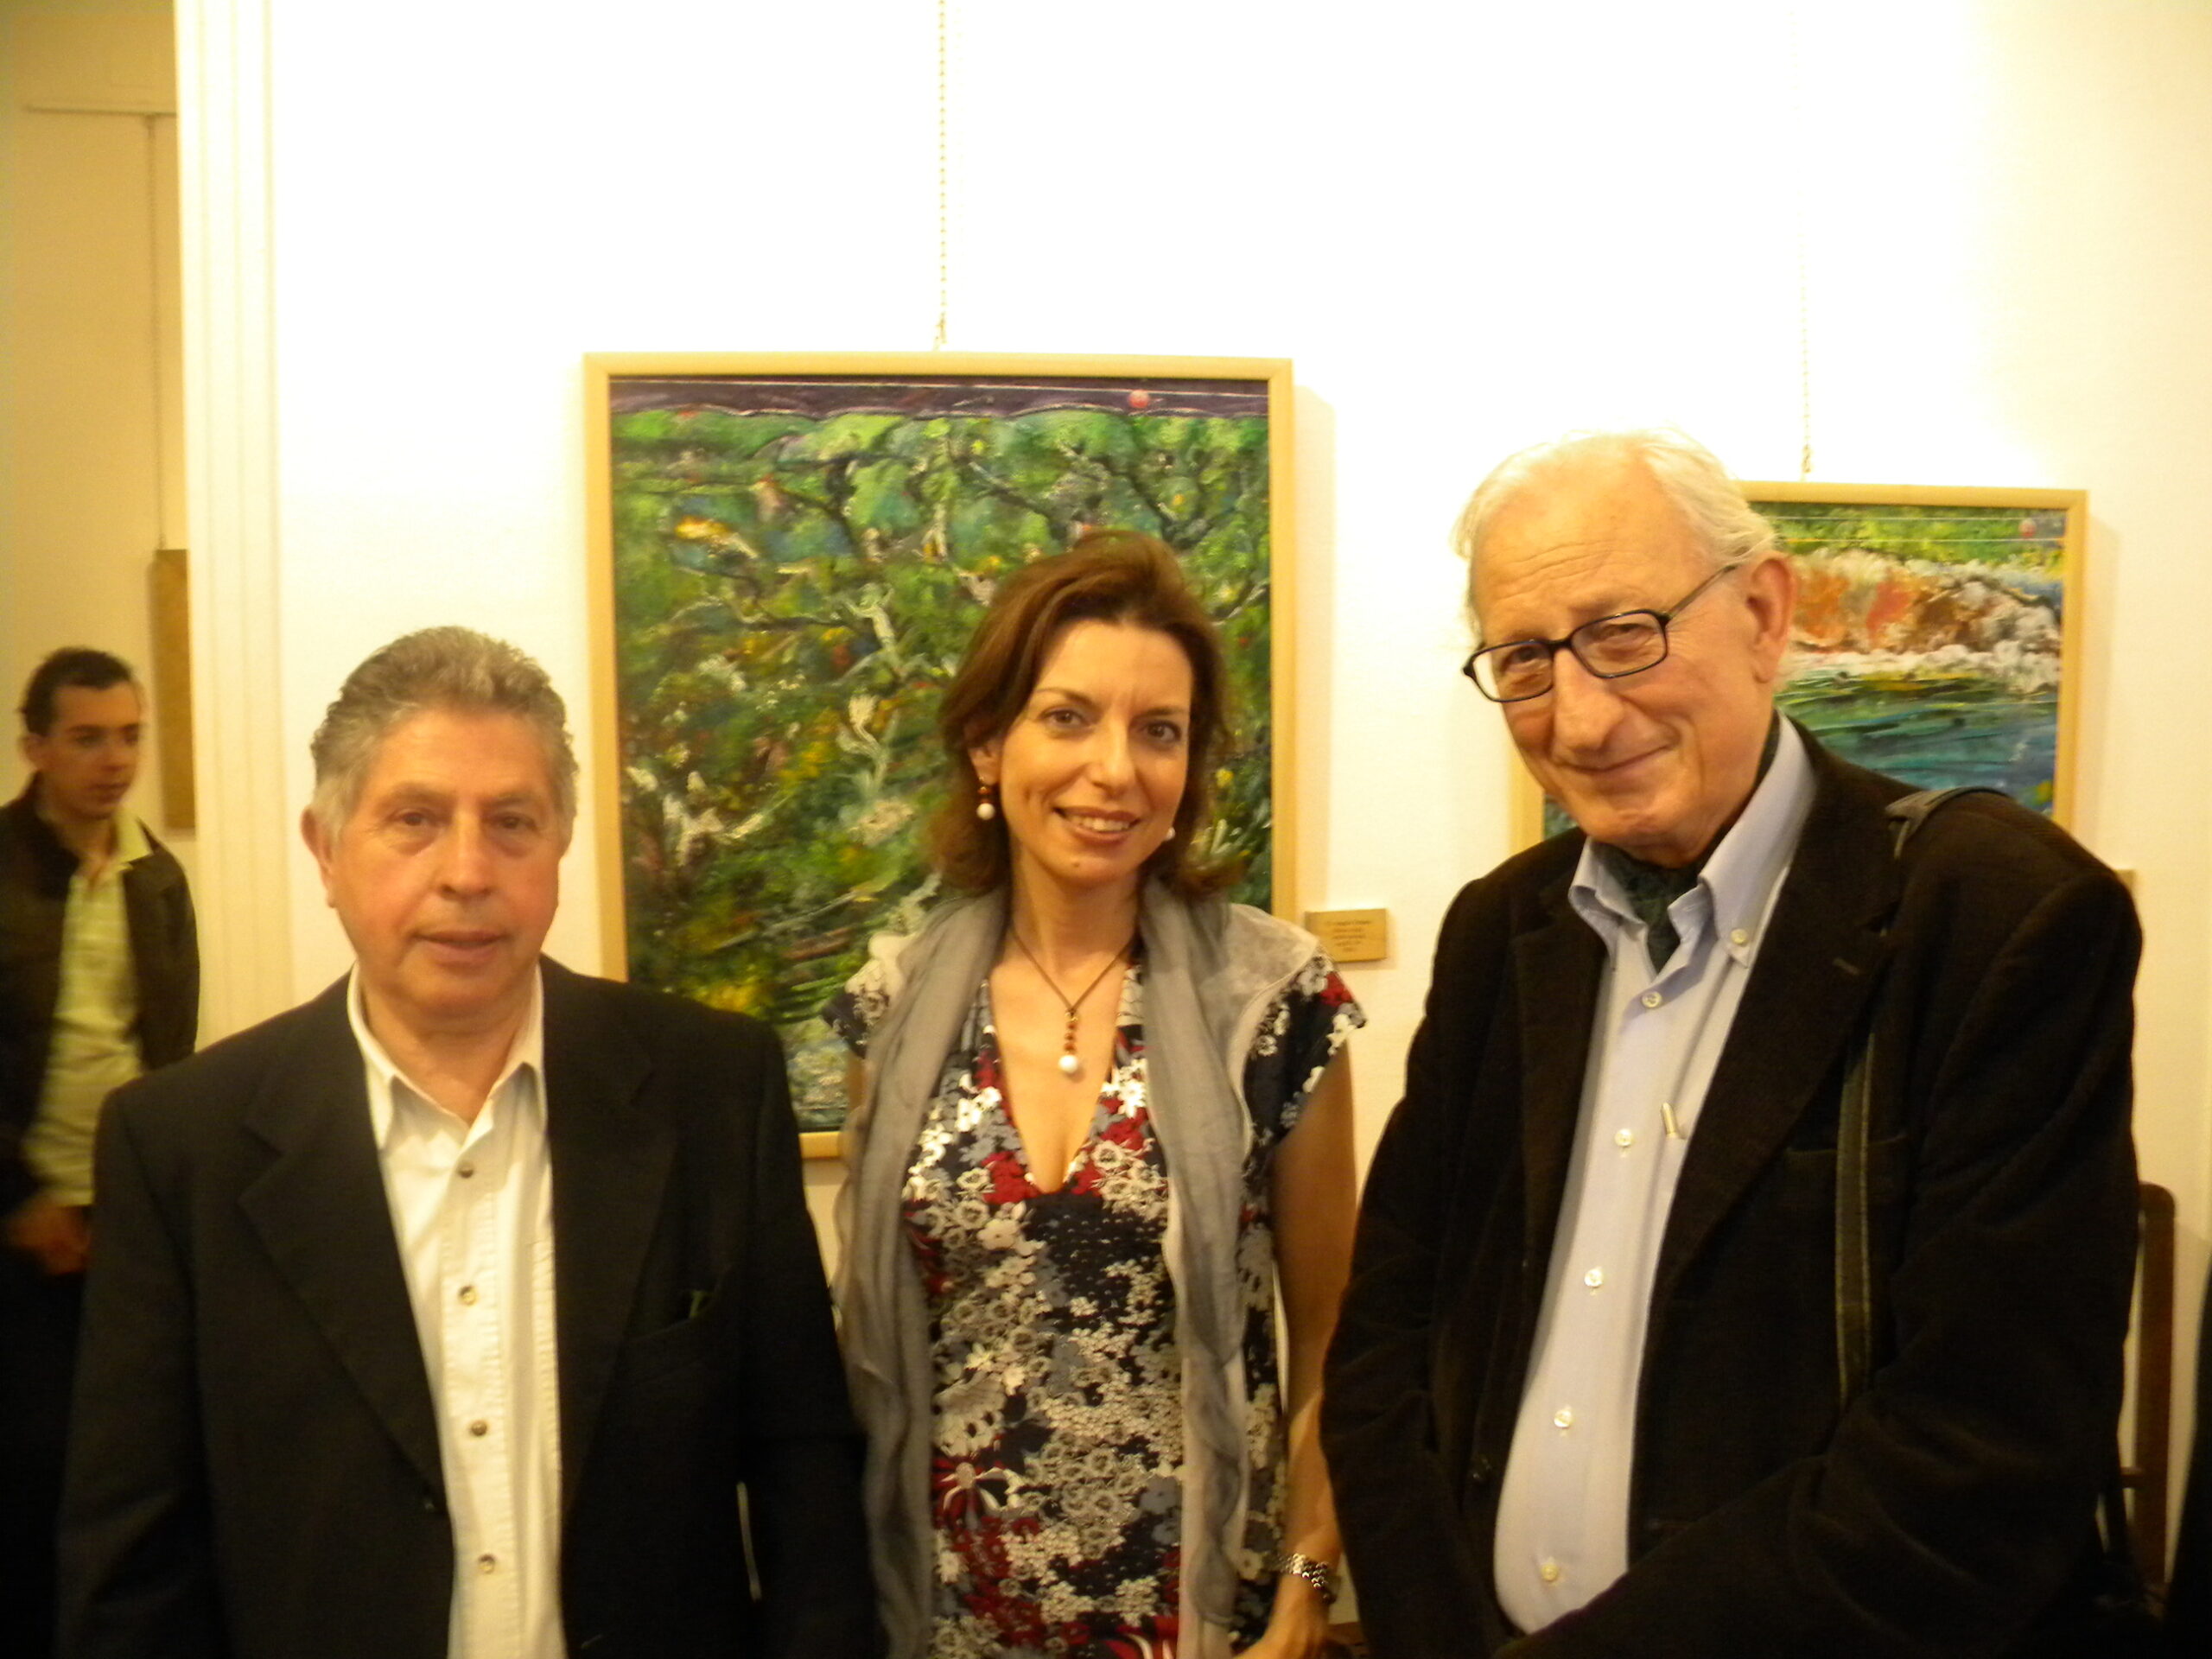 Angelo Denaro, Laura Romano e Vincenzo Anello all'inaugurazione della Collettiva "13 x 13", 11 Maggio 2011